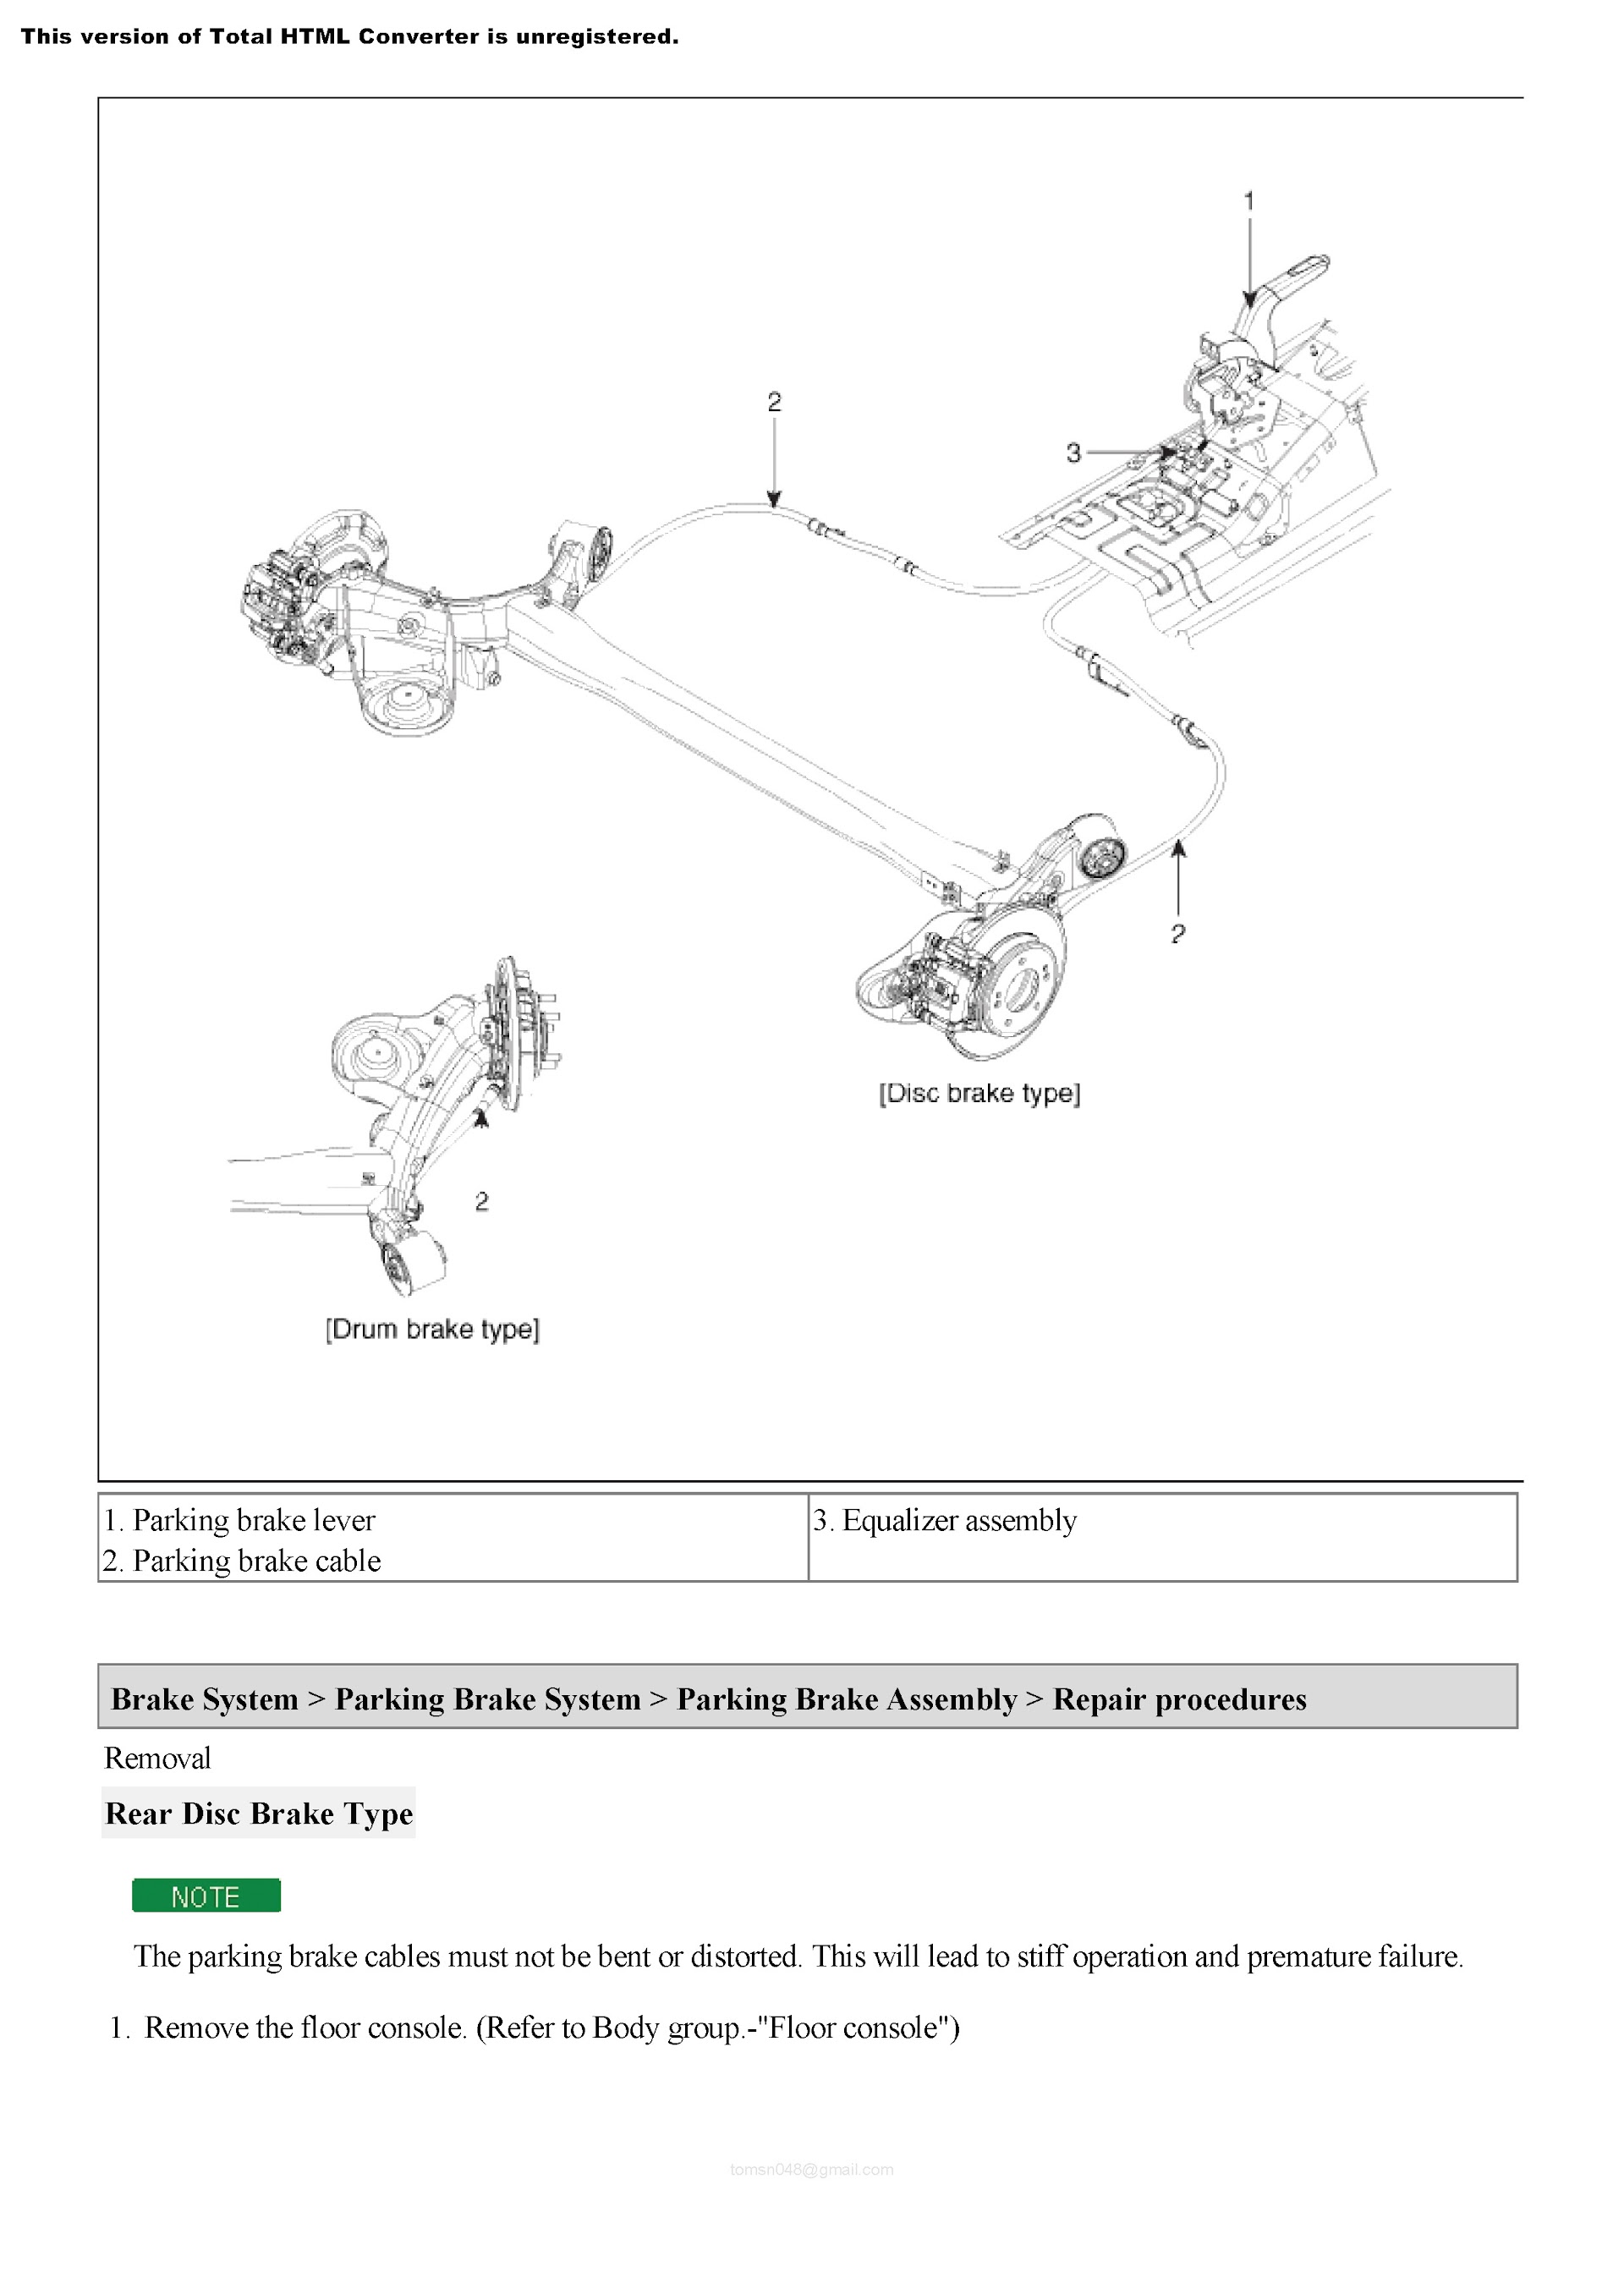 2013 Hyundai Elantra Repair Manual, Brake System